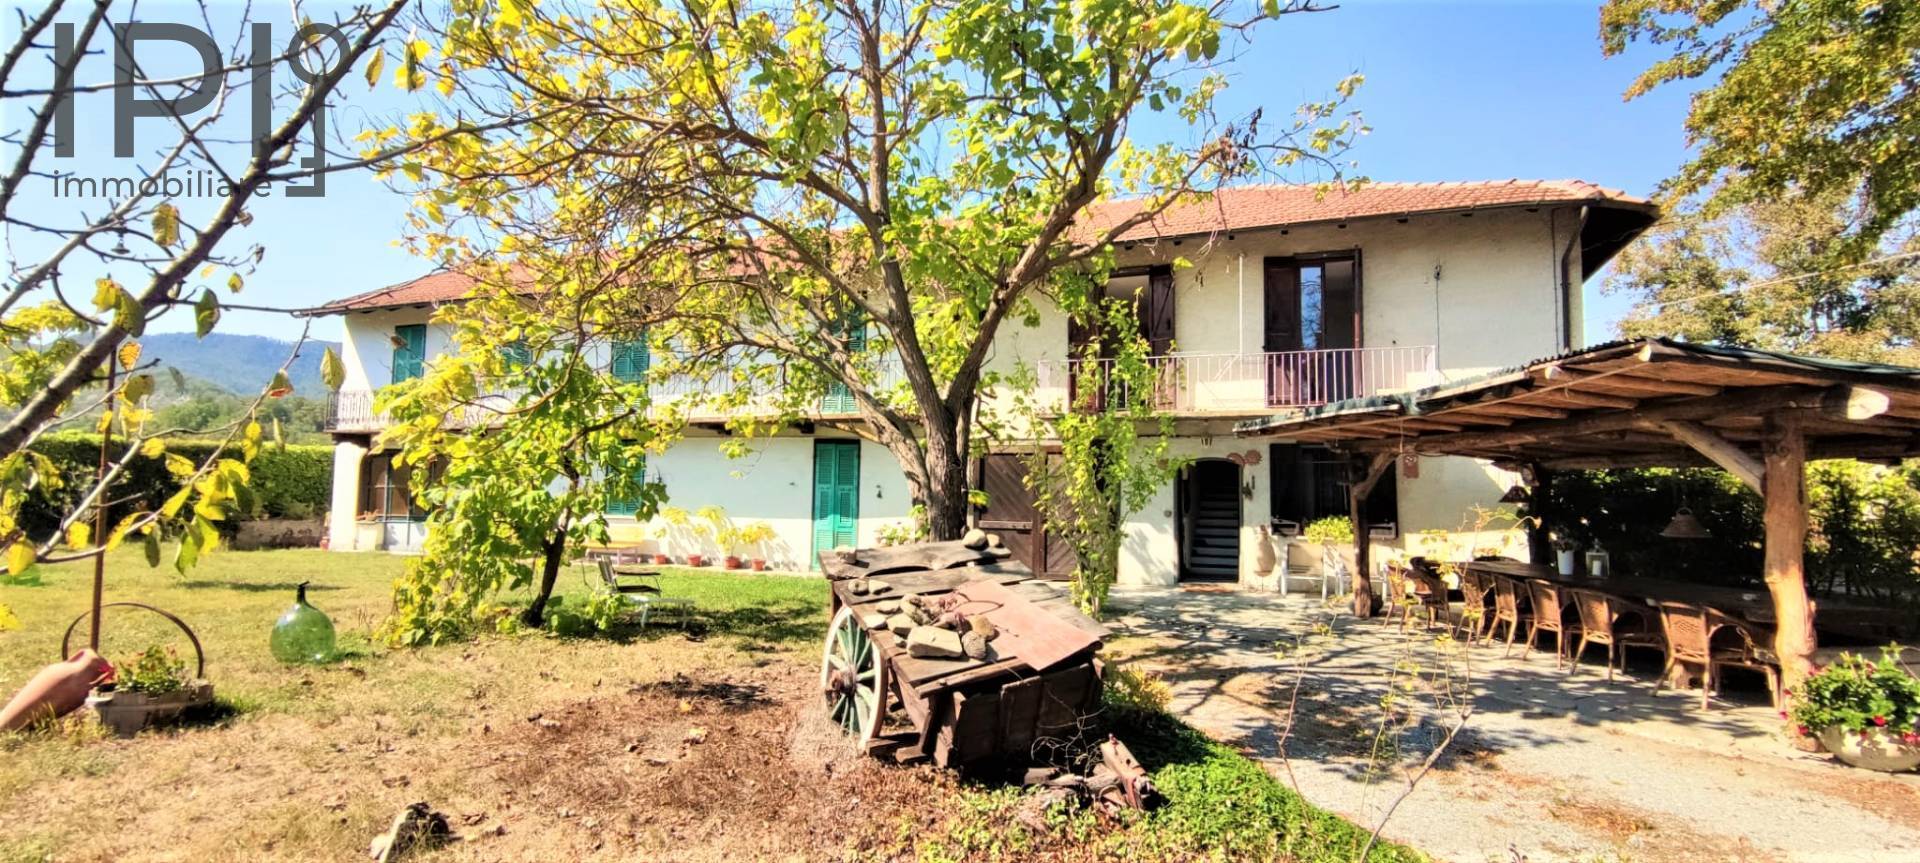 Villa in vendita a Merana, 15 locali, prezzo € 220.000 | PortaleAgenzieImmobiliari.it